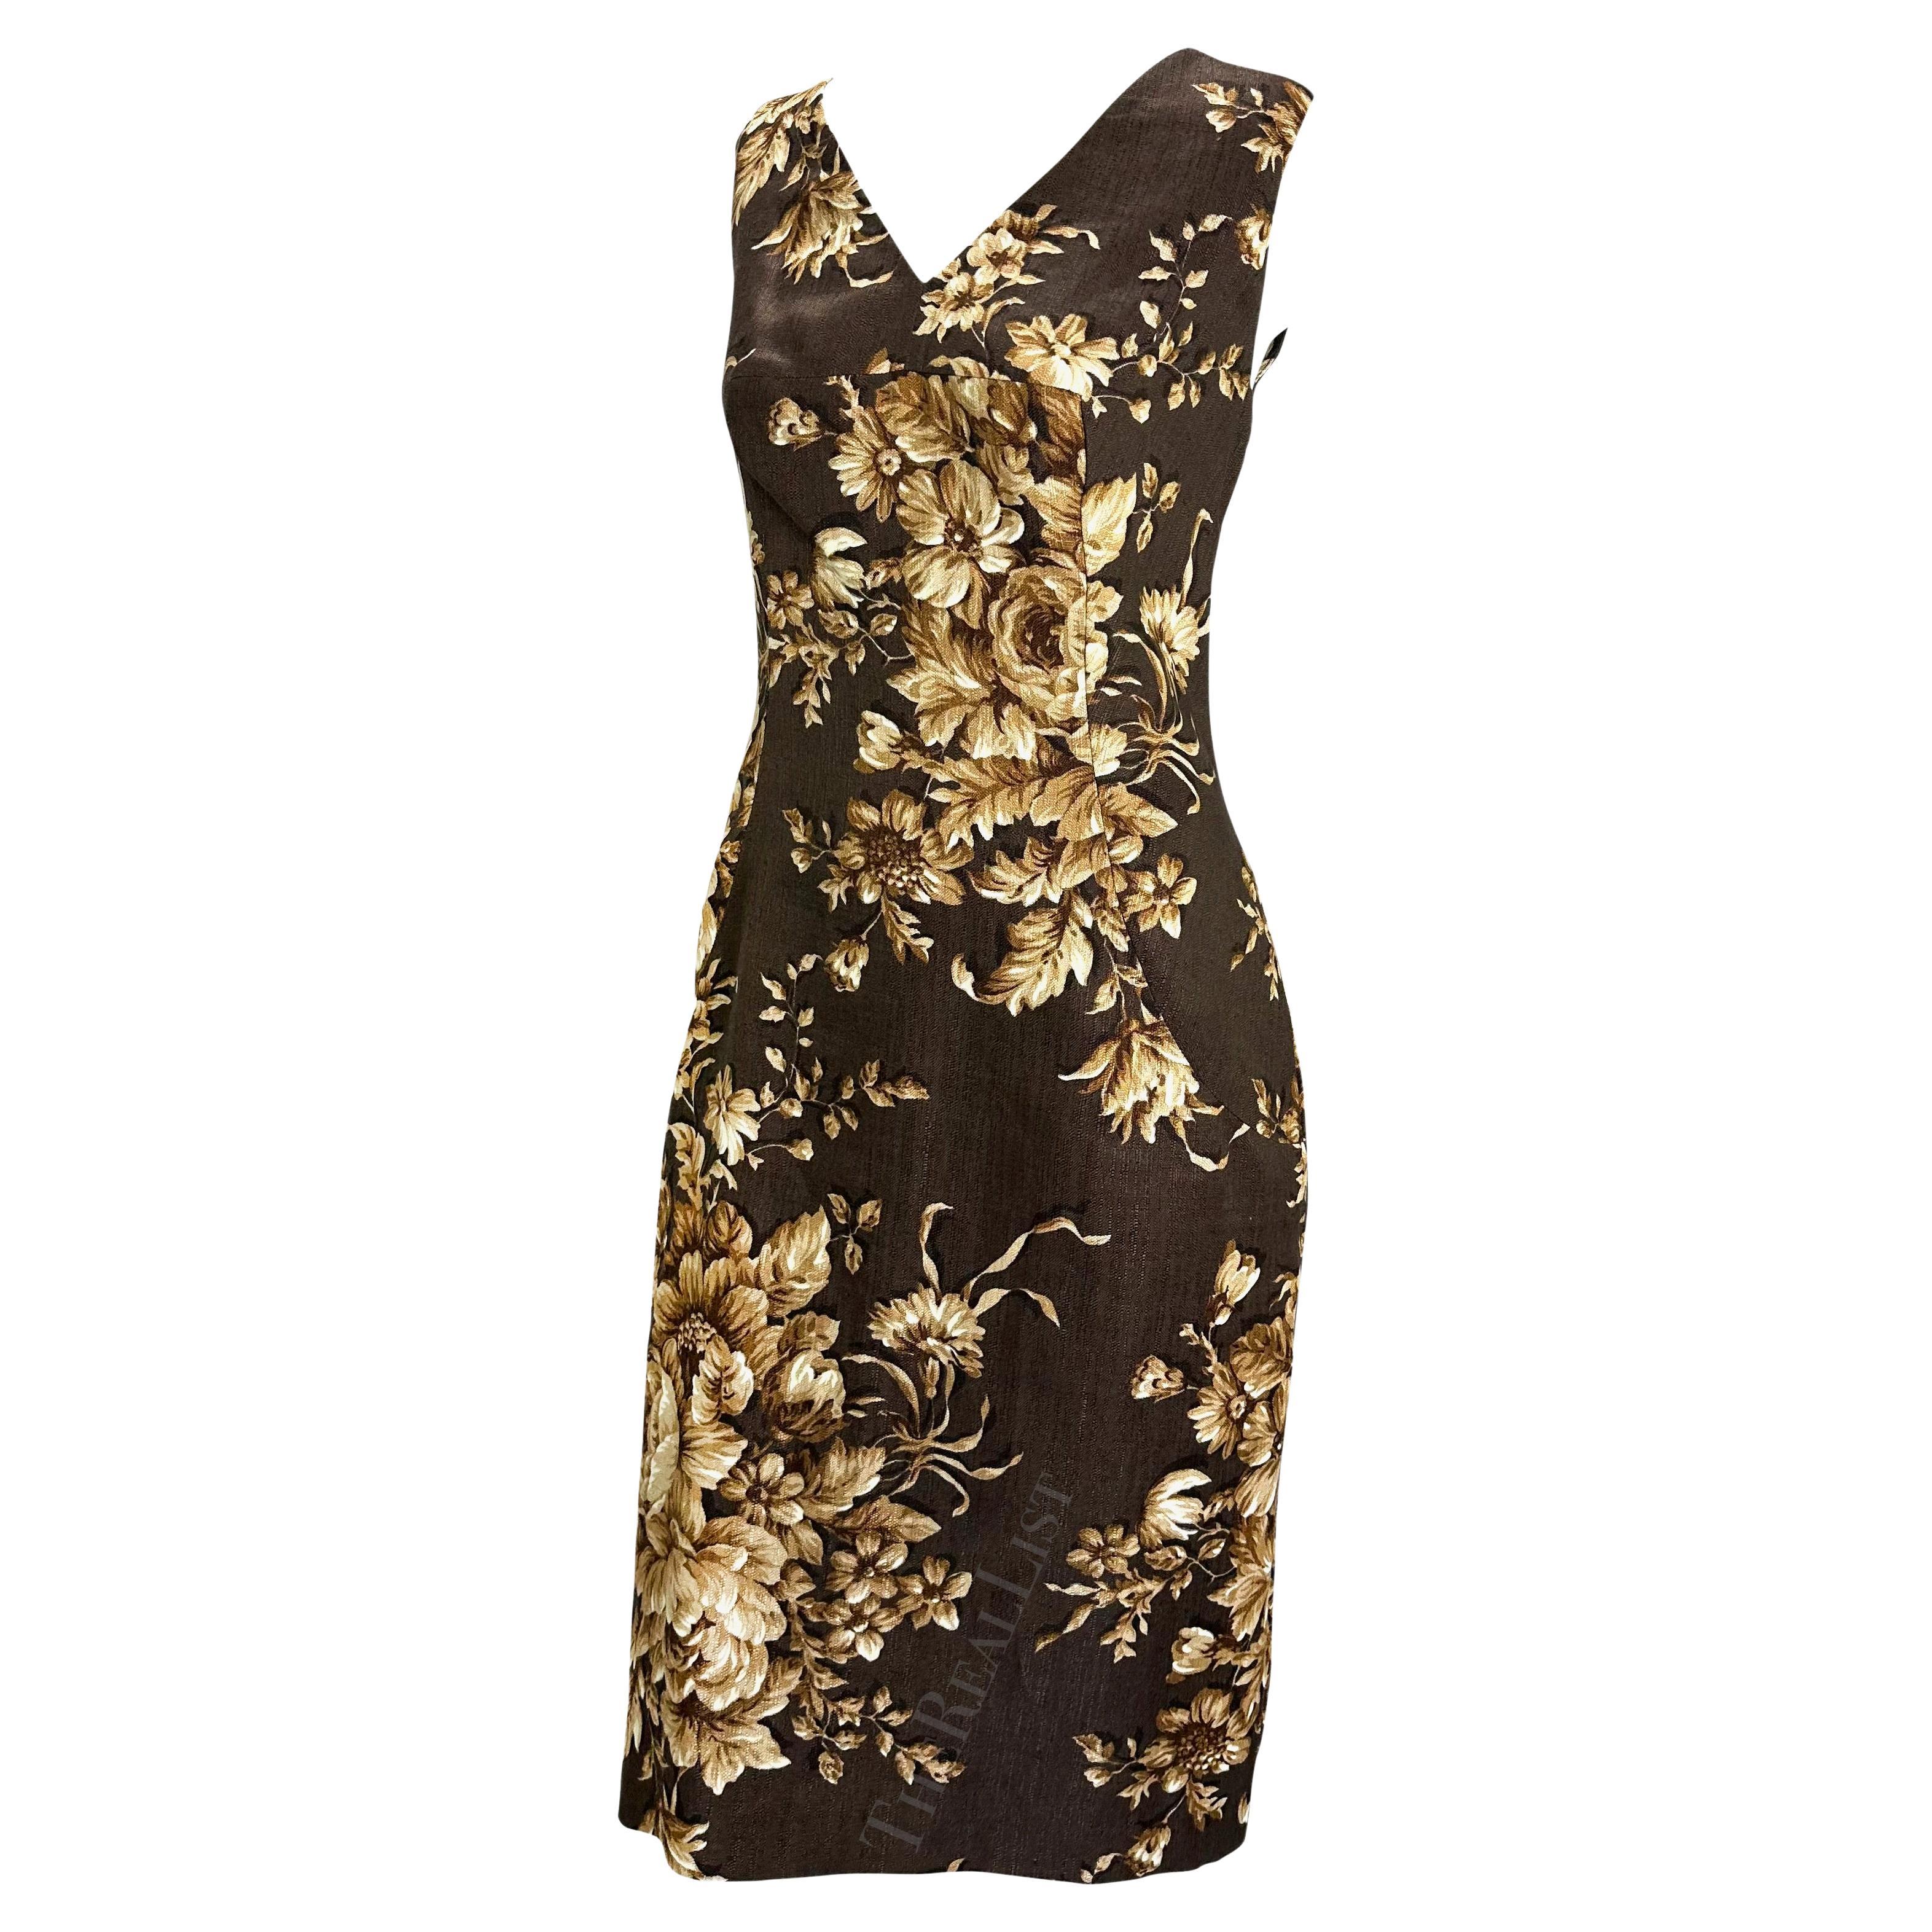 Ich präsentiere ein fabelhaftes braunes, geblümtes, ärmelloses Kleid von Dolce und Gabbana. Dieses Kleid aus der Frühjahr/Sommer-Kollektion 1997 ist mit einem Blumenmuster bedruckt, das auf dem Laufsteg der Saison häufig zu sehen war.

Ungefähre